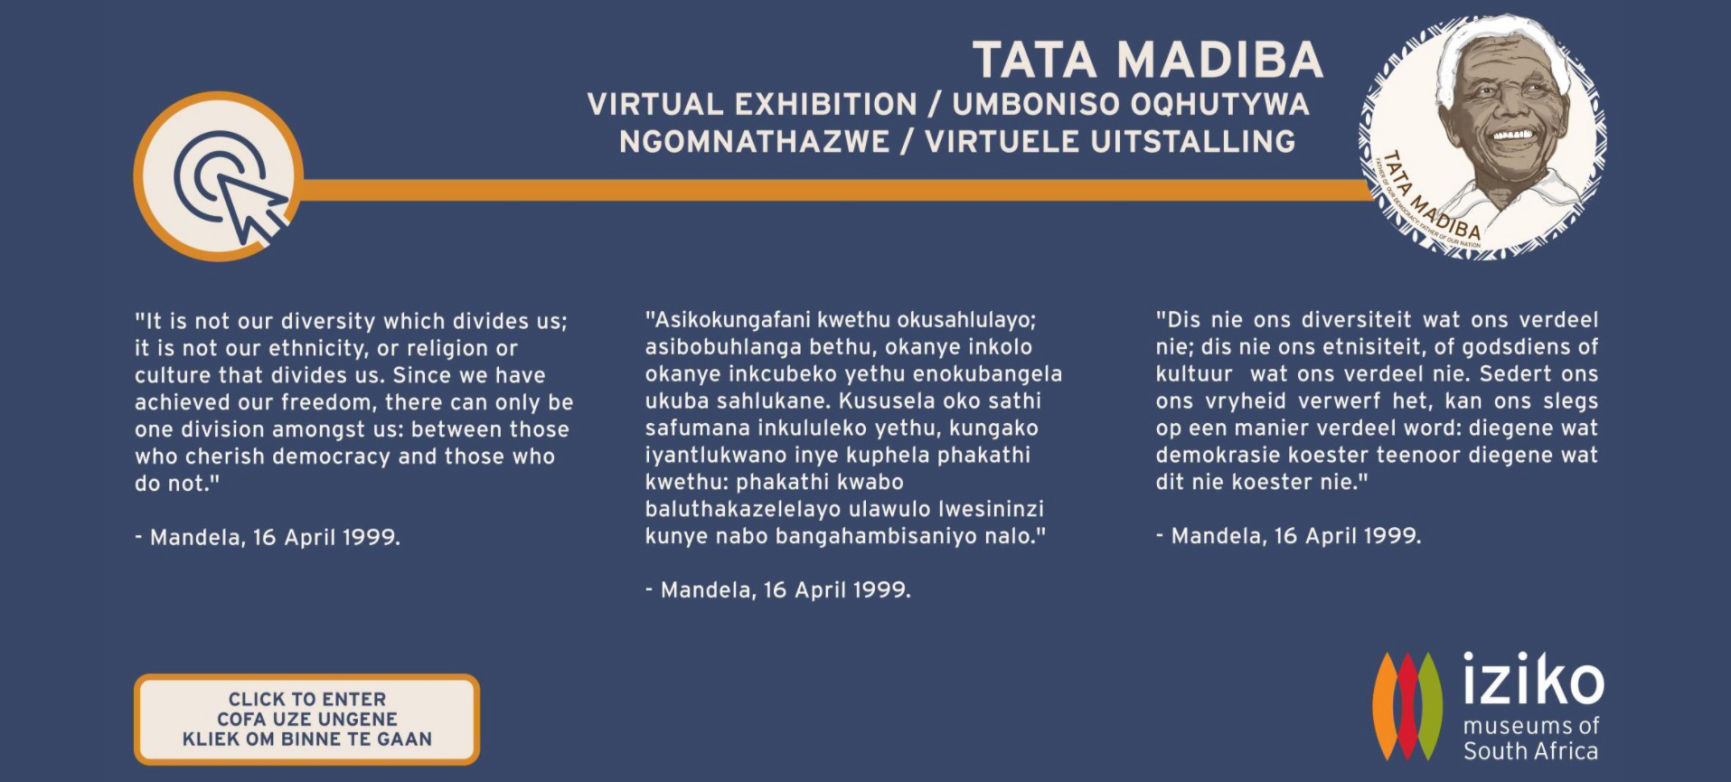 Tata Madiba Exhibition